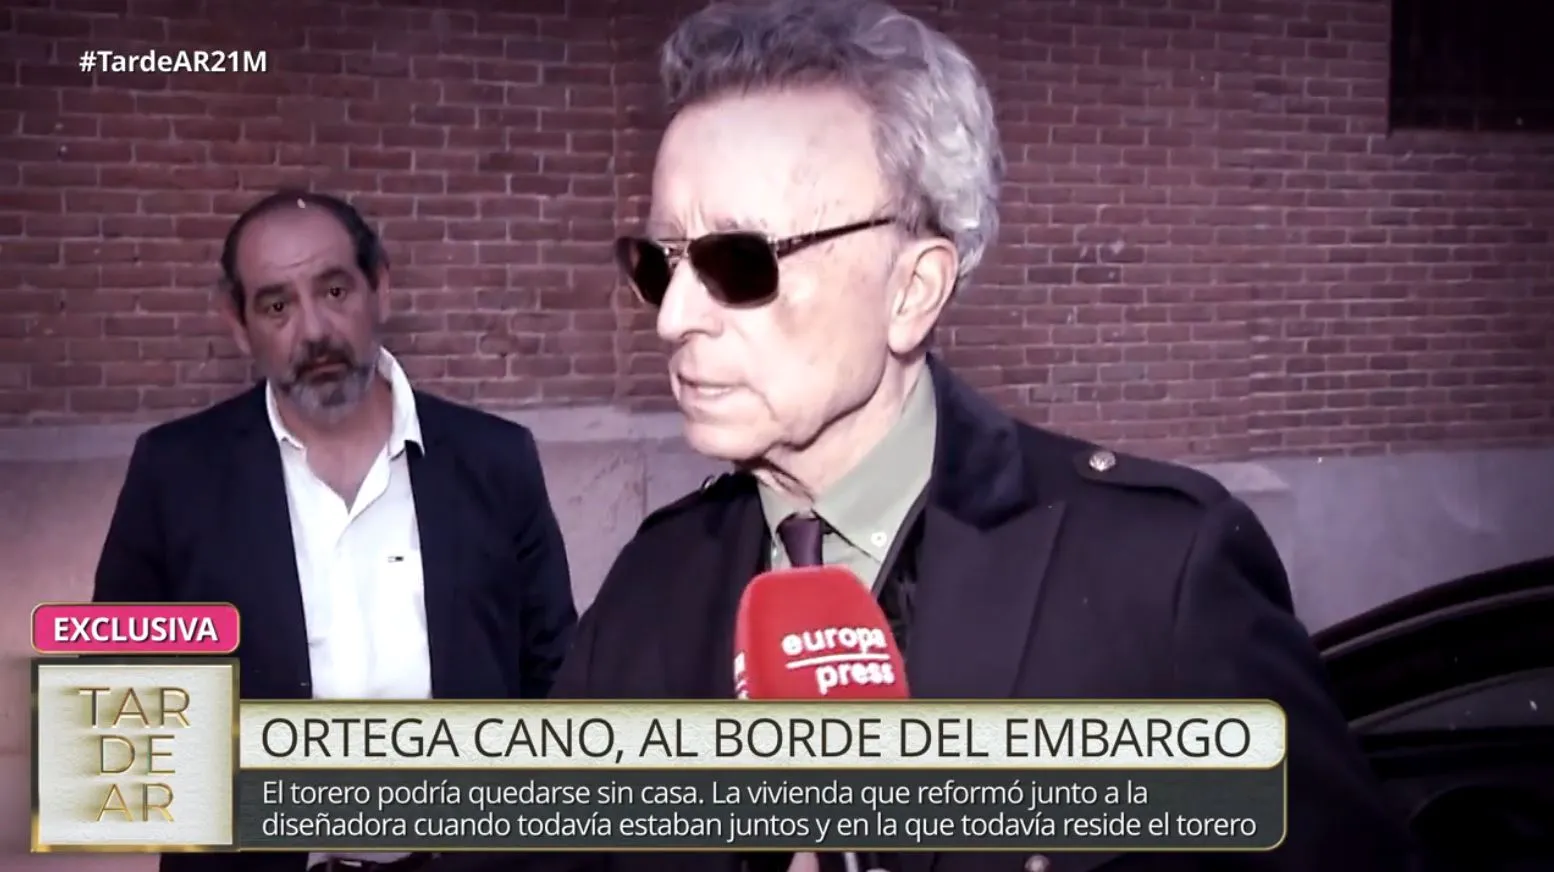 En TardeAR hablan de los problemas económicos de Ortega Cano.